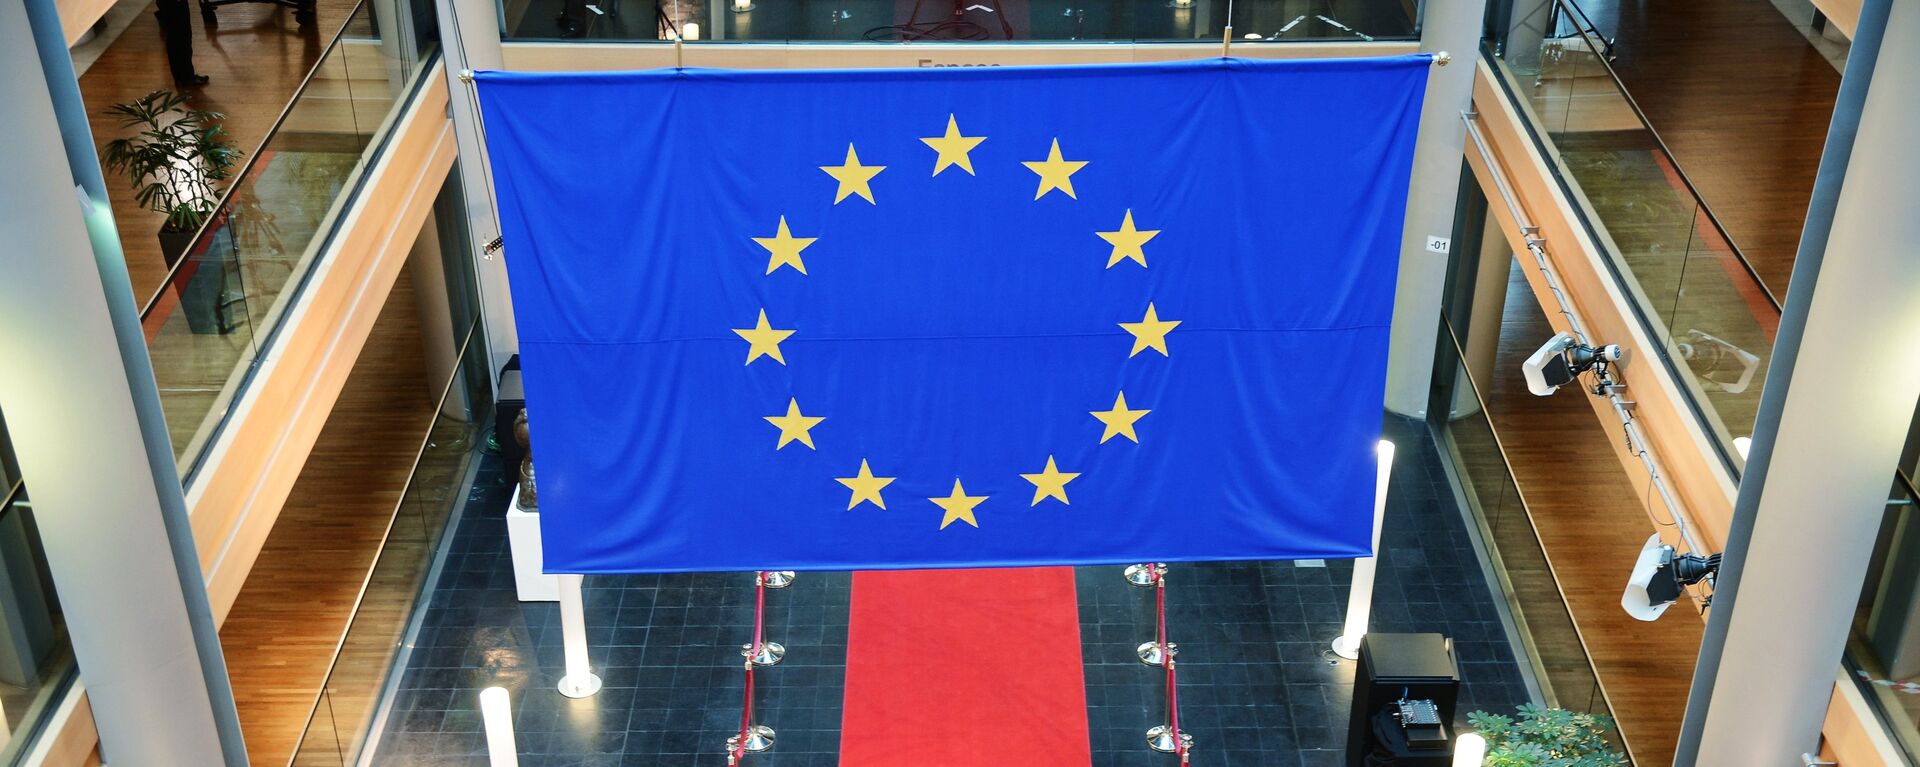 Bandera de la UE - Sputnik Mundo, 1920, 26.02.2021